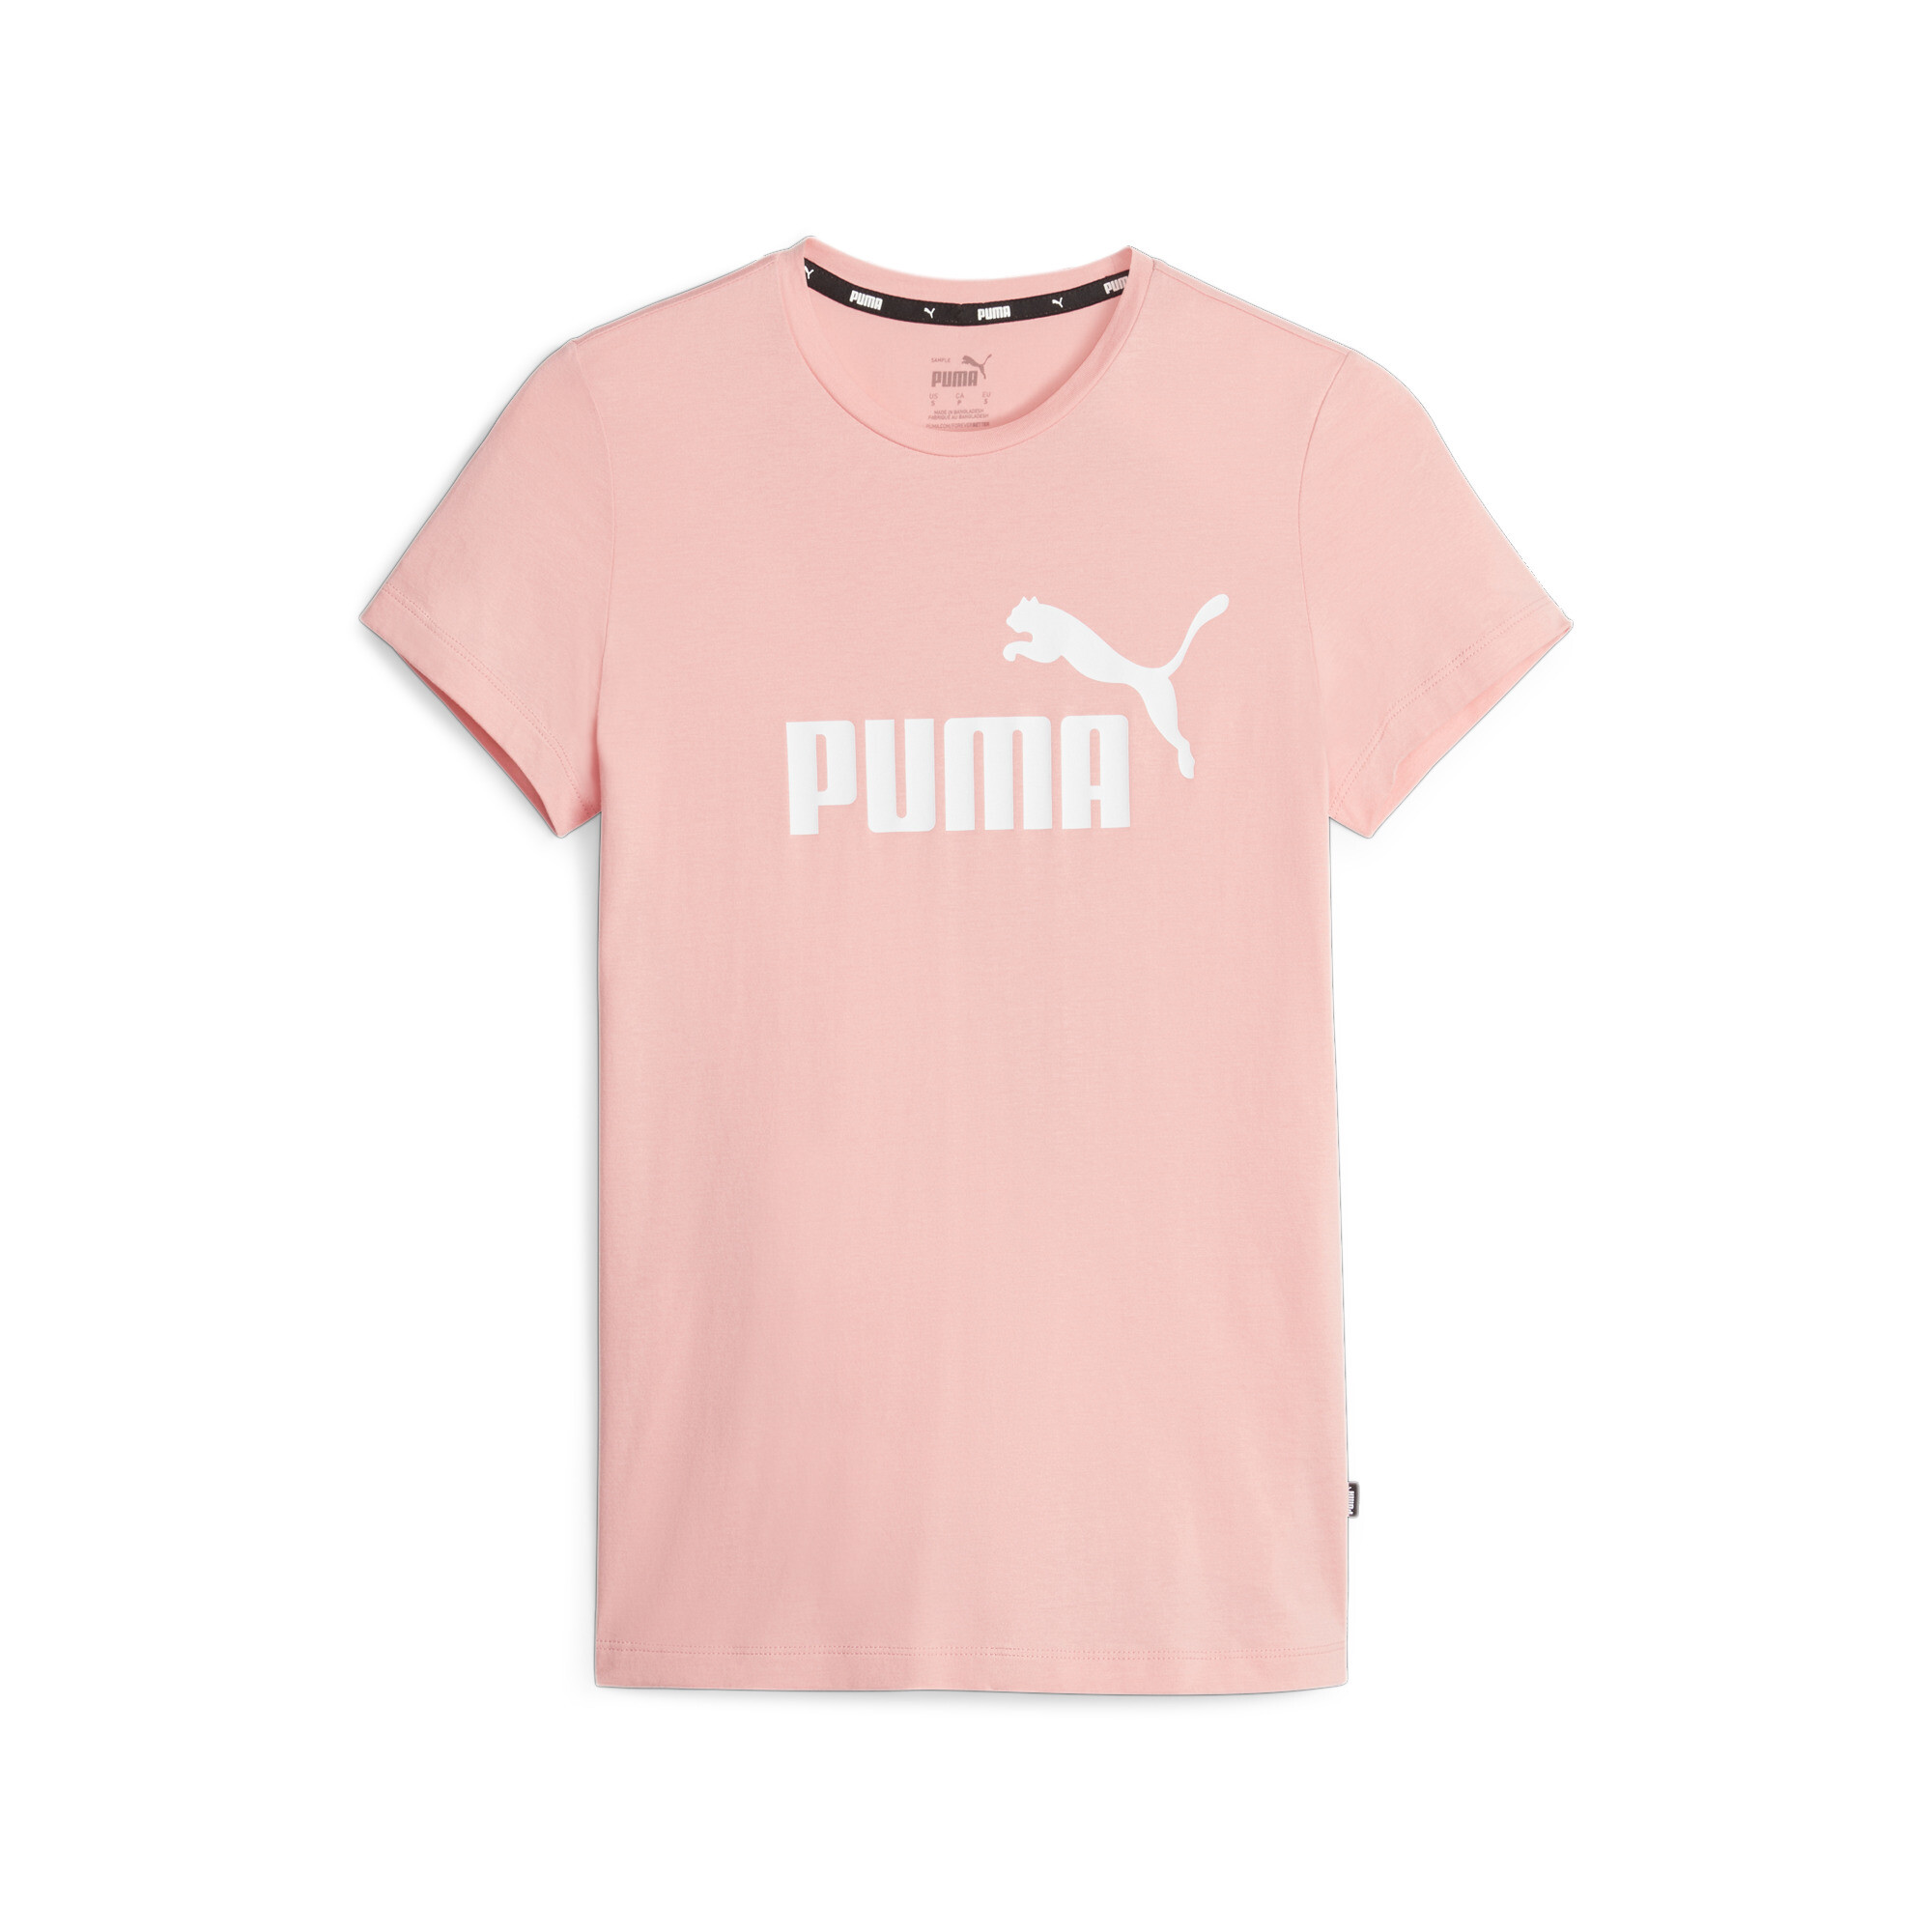 Tee - (s) kaufen Logo peach ESS smoothie Puma online